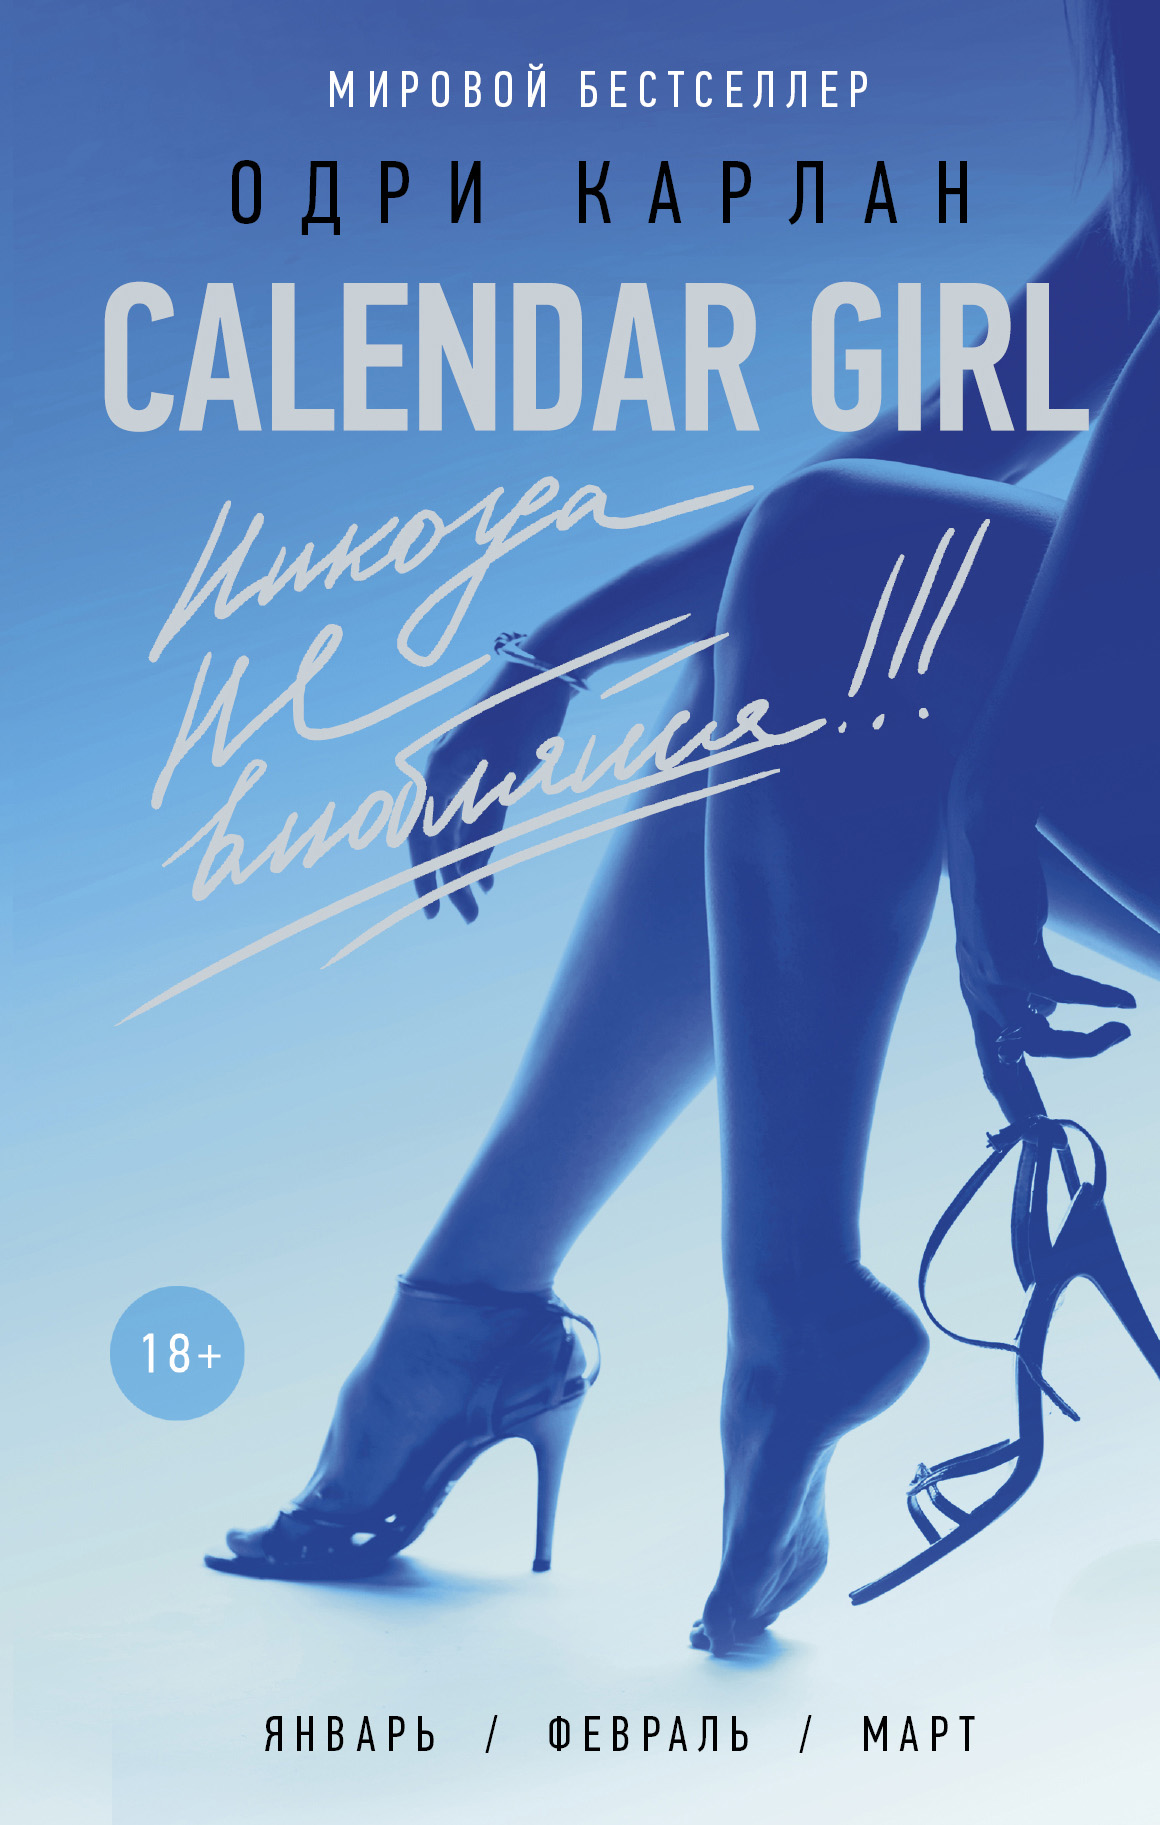 Calendar Girl.Никогда не влюбляйся!